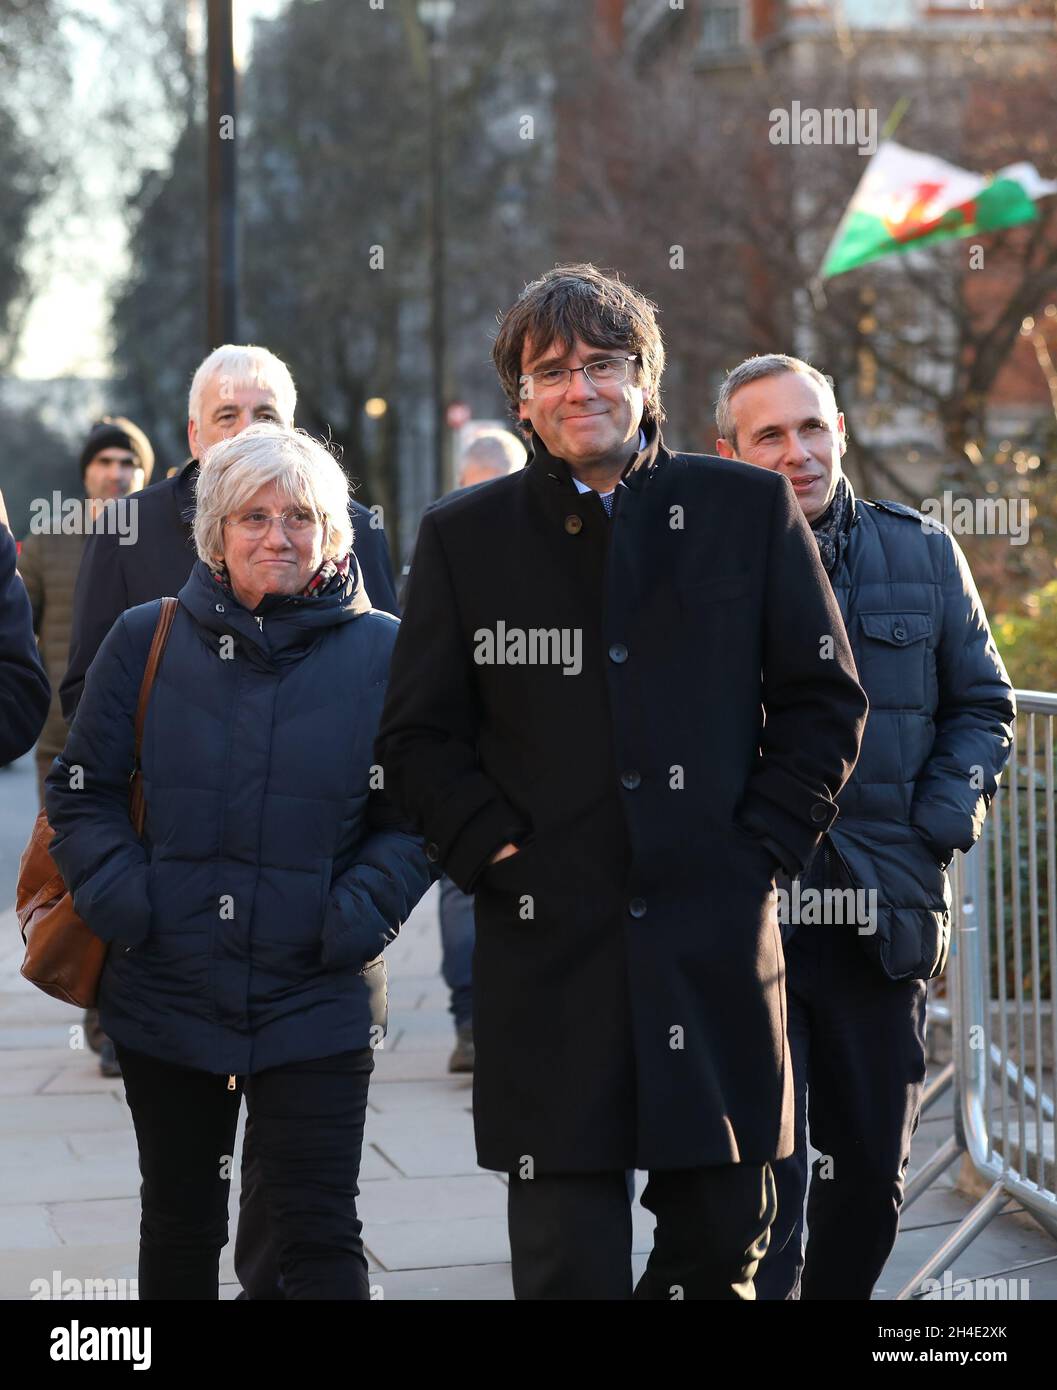 (De gauche à droite) le politicien catalan pro-indépendance Clara Ponsati et l'ancien président régional catalan Carles Puigdemont à Westminster, Londres, dans le cadre d'une visite au Royaume-Uni.Photo datée du jeudi 13 décembre 2018 Banque D'Images